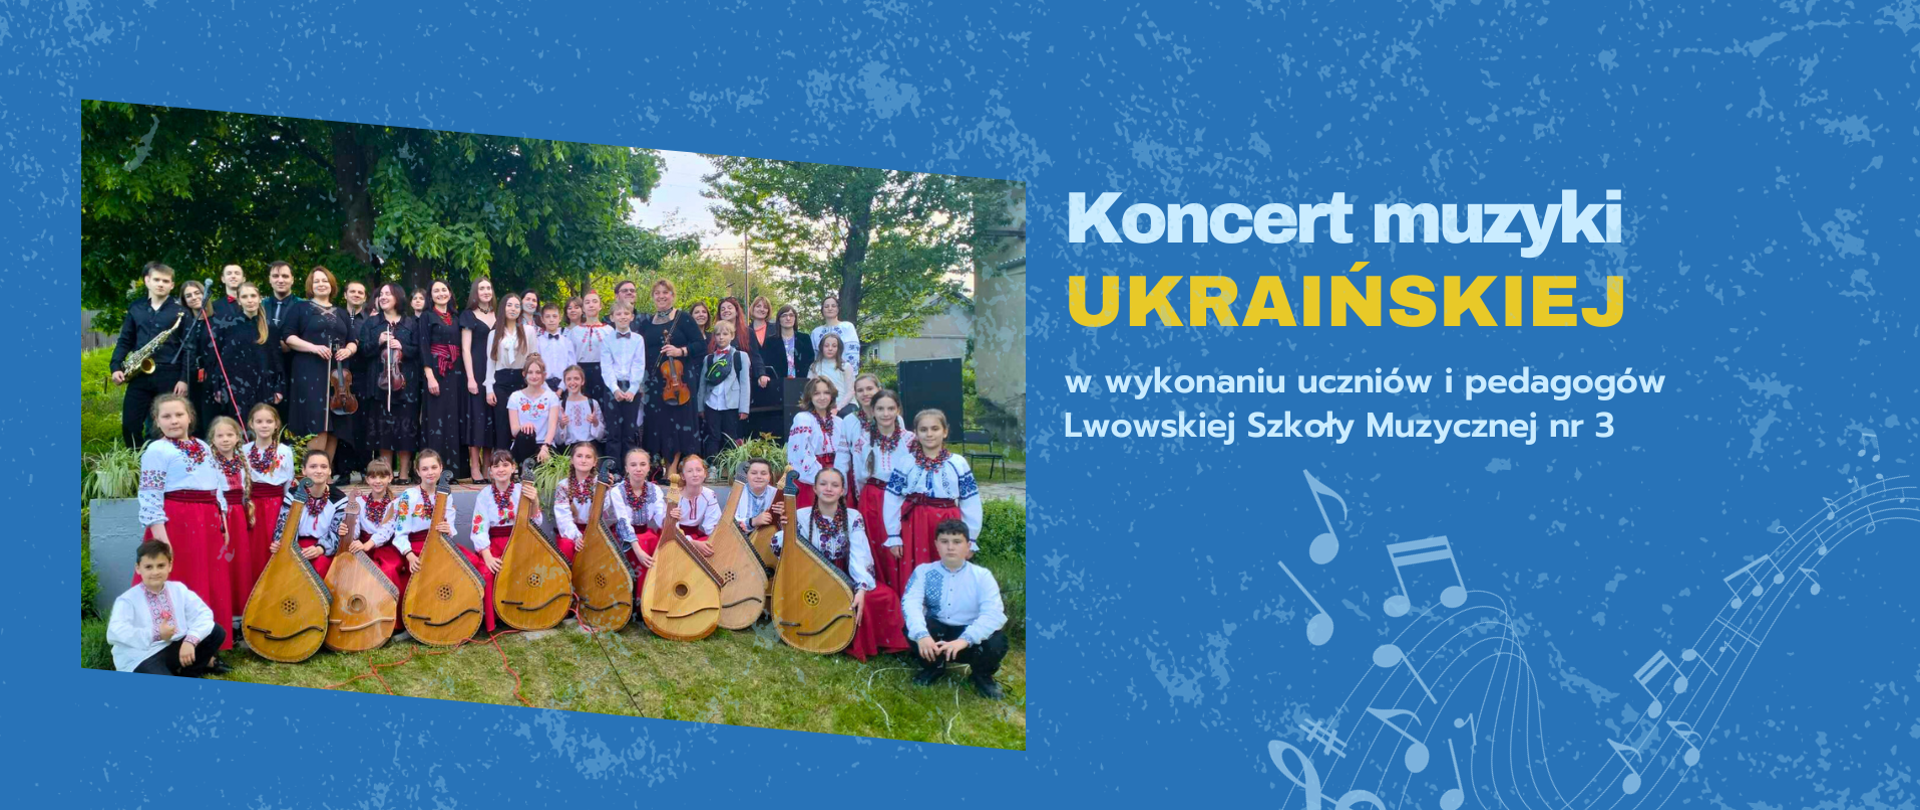 Koncert muzyki ukraińskiej w wykonaniu uczniów i nauczycieli Lwowskiej Szkoły nr 3. Po lewej stronie znajduje się zdjęcie uczniów i pedagogów lwowskiej szkoły muzycznej.